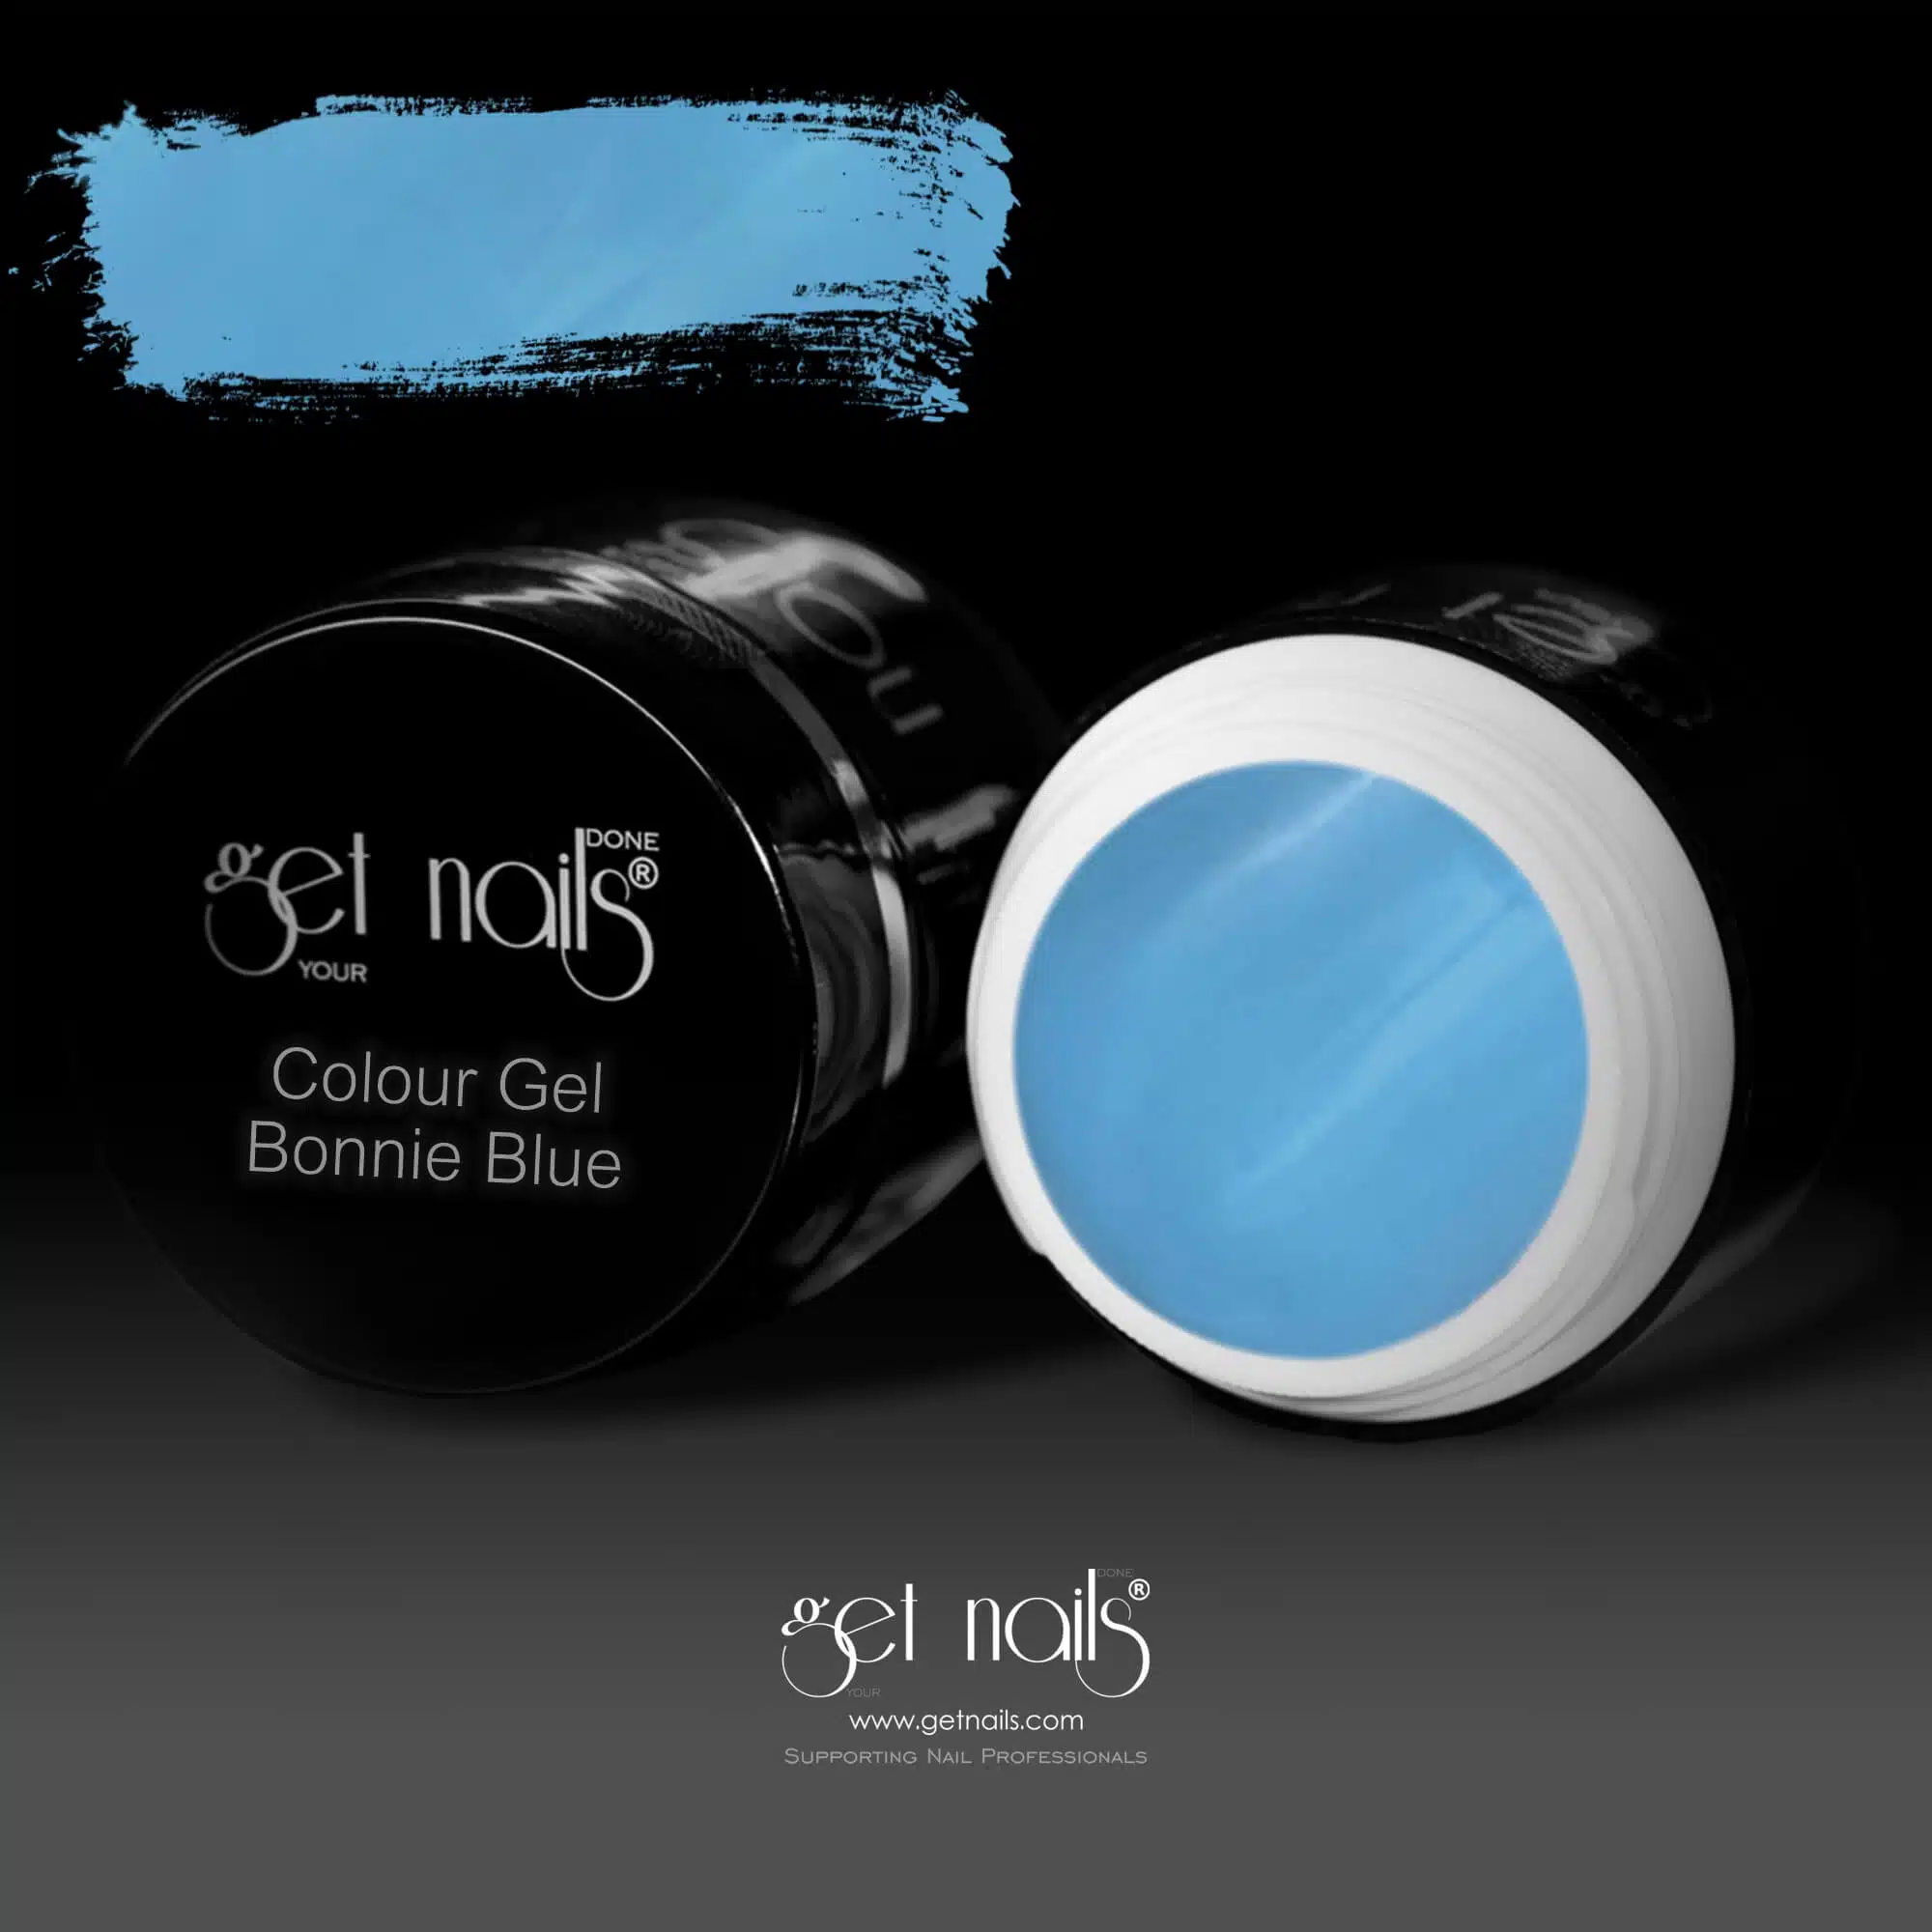 Get Nails Austria - Color Gel Bonnie Blue 5g